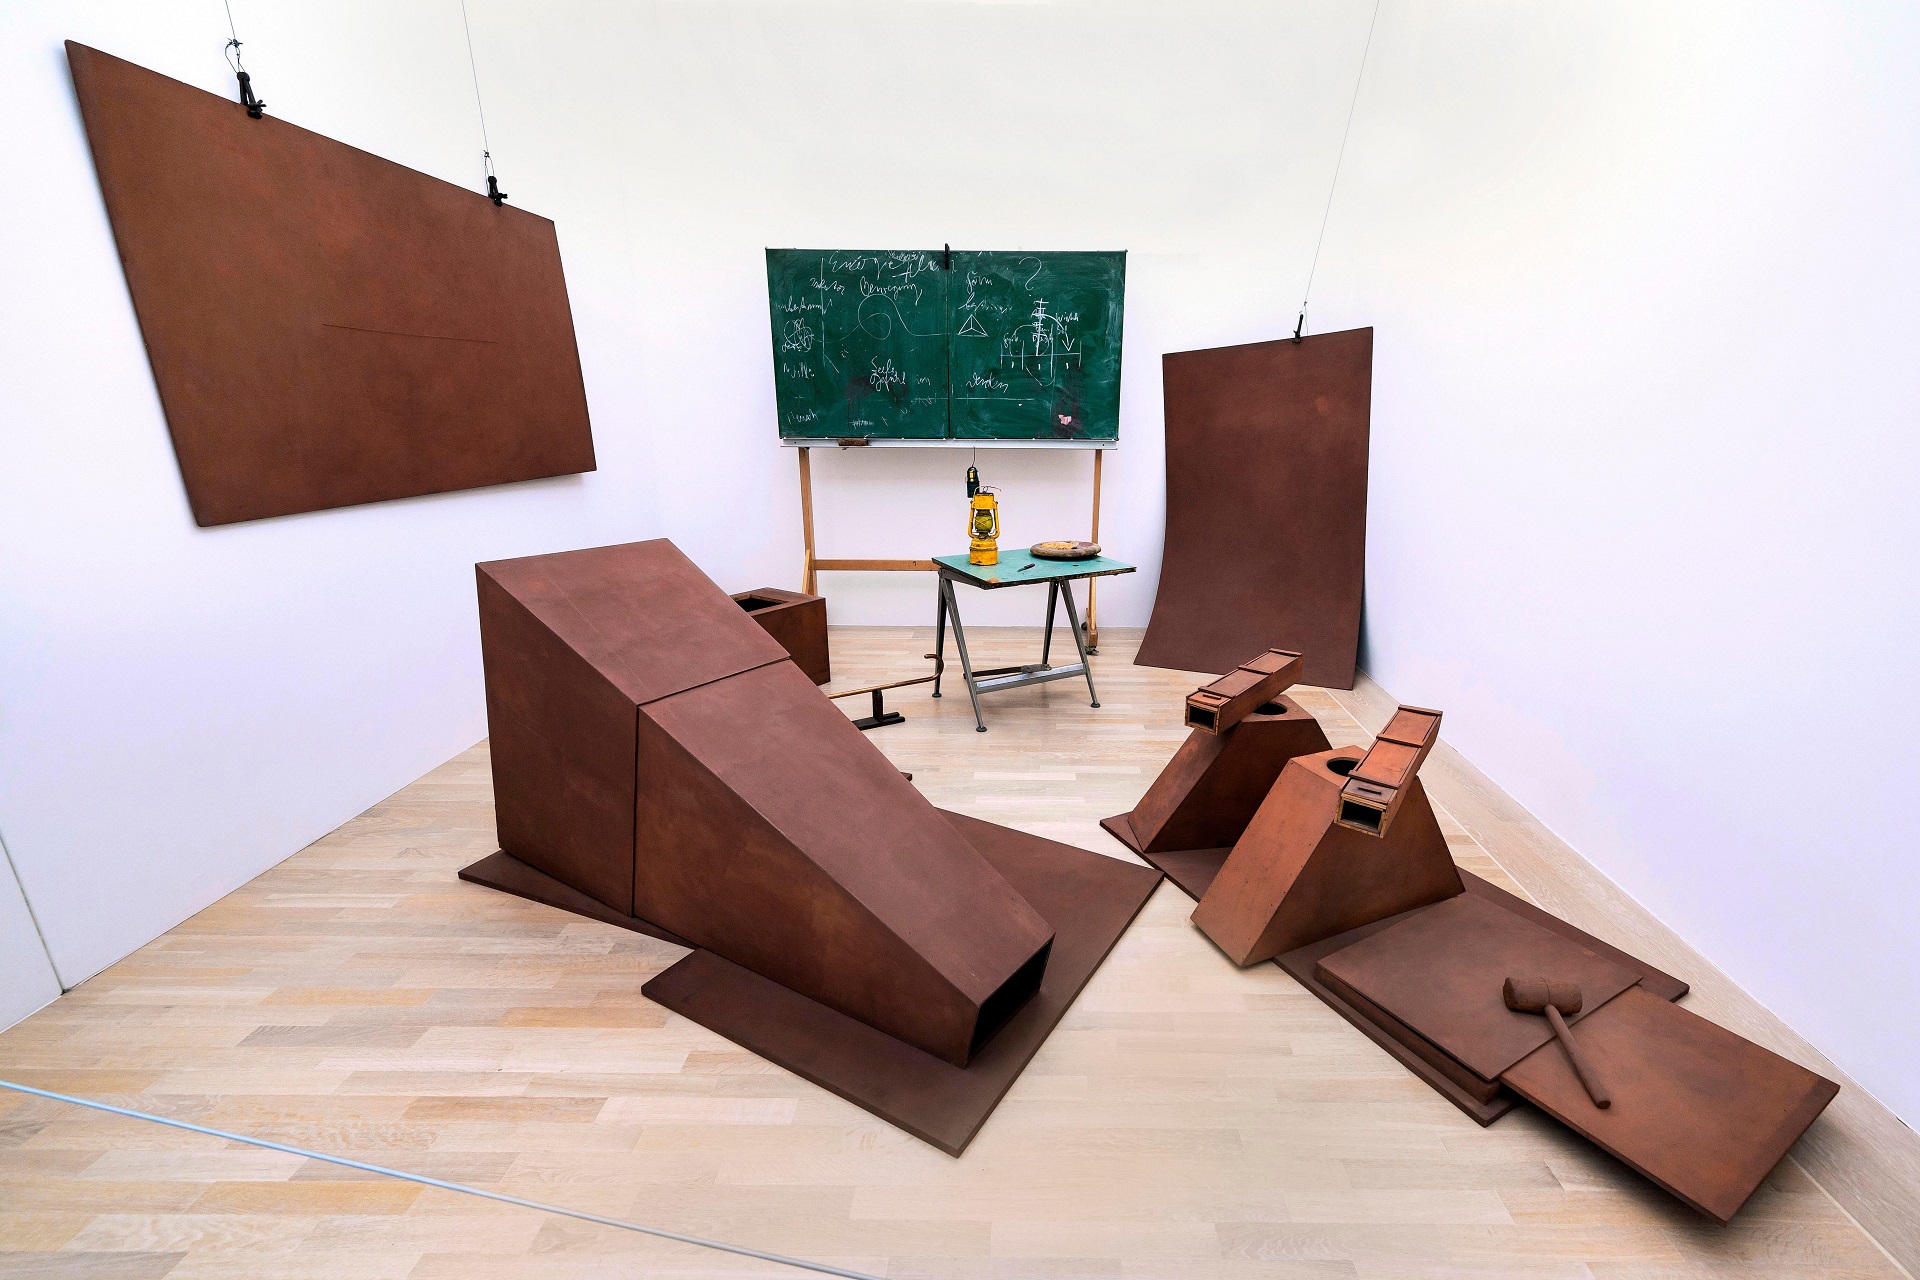 Joseph Beuys. Vor der Flucht aus dem Camp I. 1976. Galerie Lenbachhaus, München